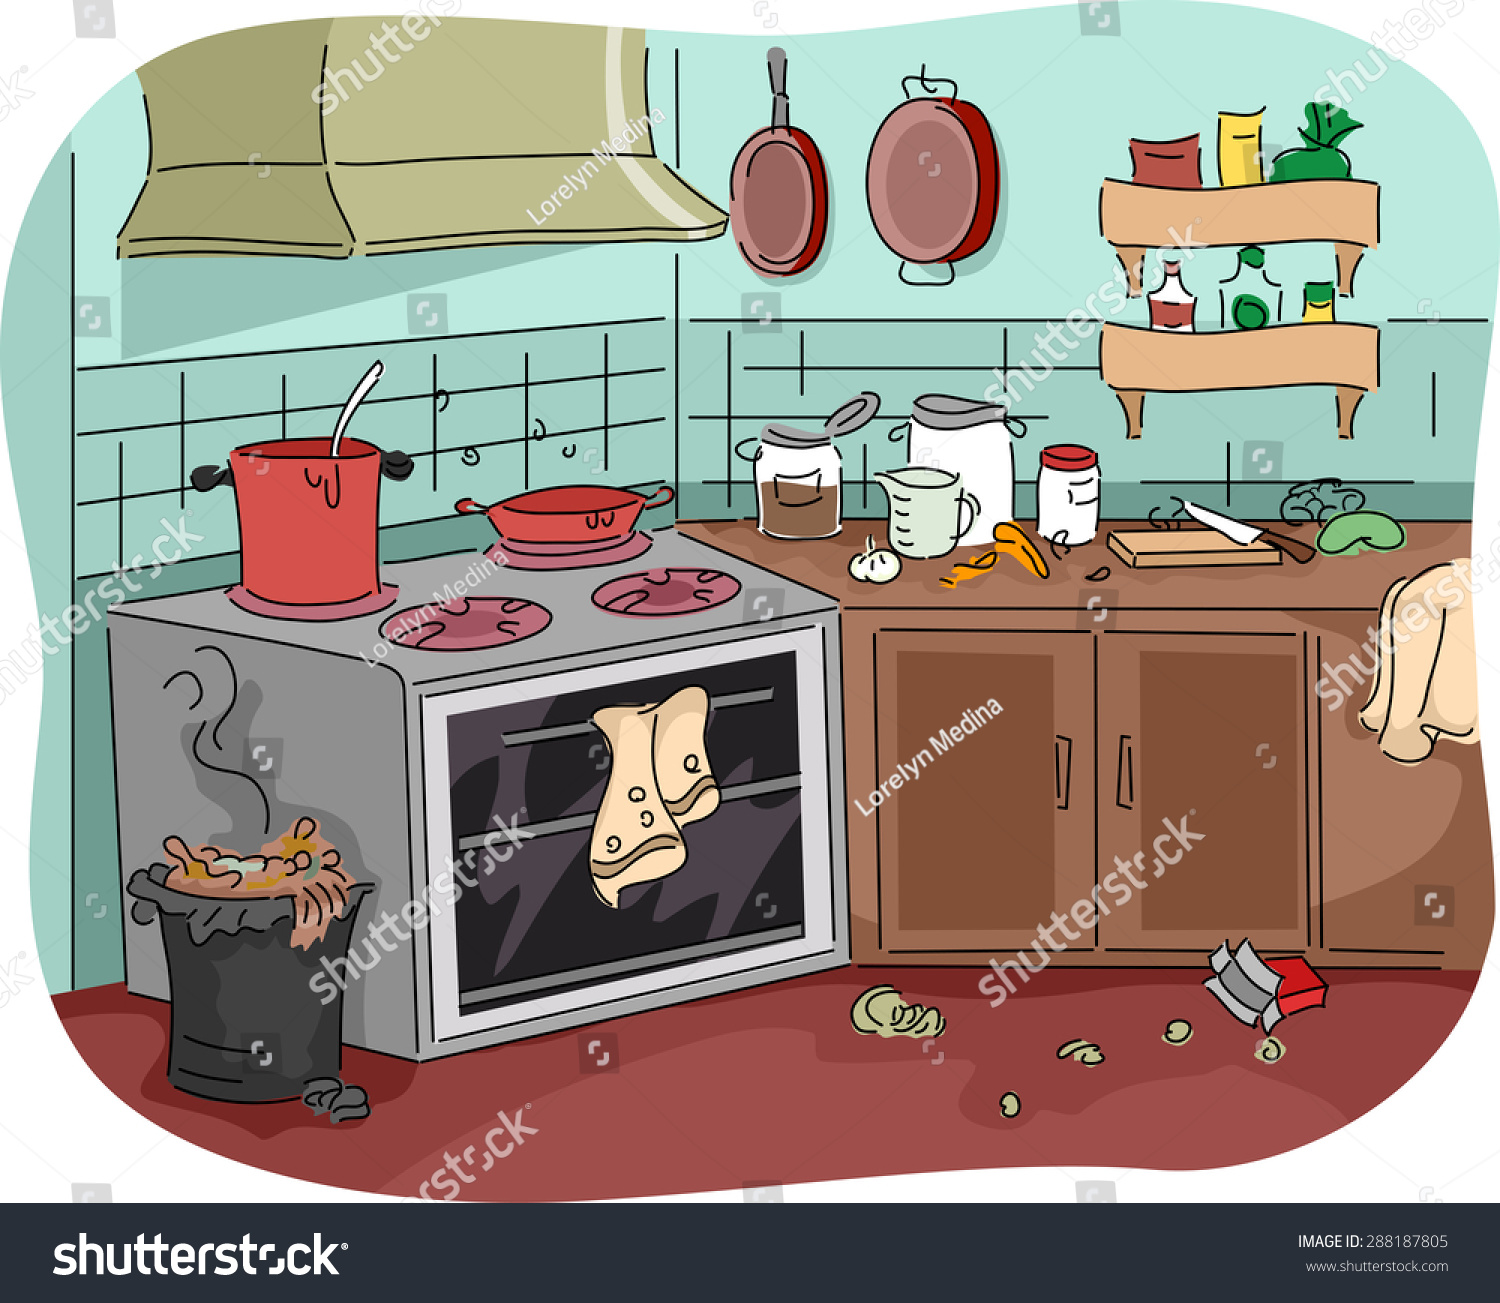 kitchen scene clipart - photo #16